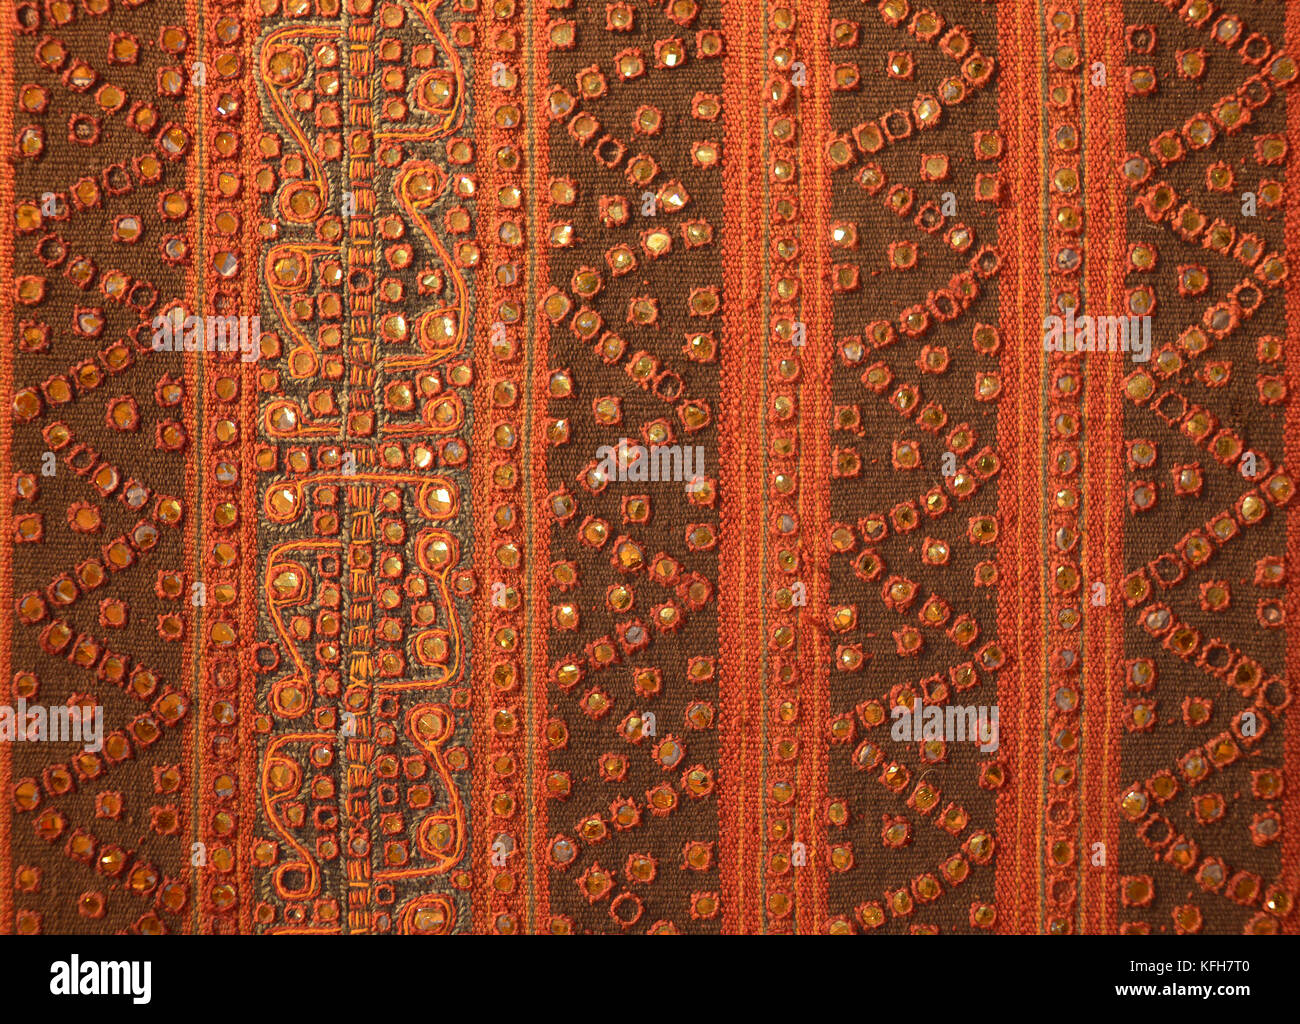 Indonesian textile with gold metallic thread applique. Sumatra  Southeast Asia Stock Photo